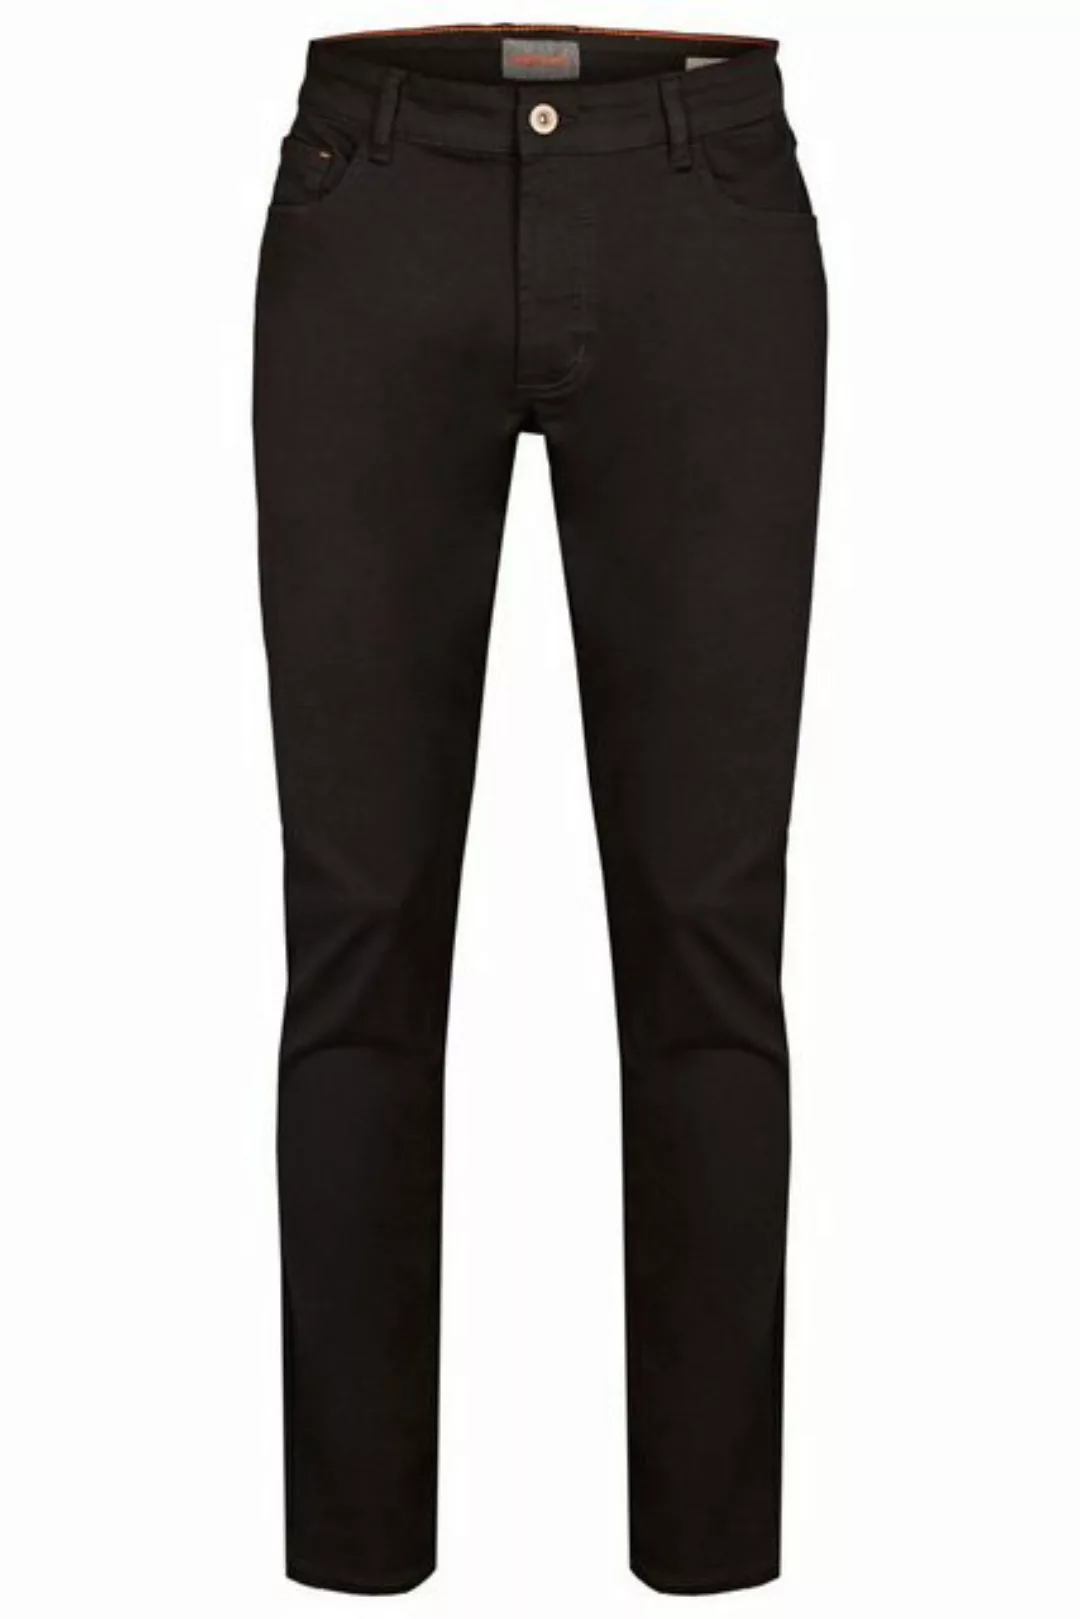 Hattric 5-Pocket-Jeans HATTRIC HARRIS stay black 688595 9210.09 günstig online kaufen